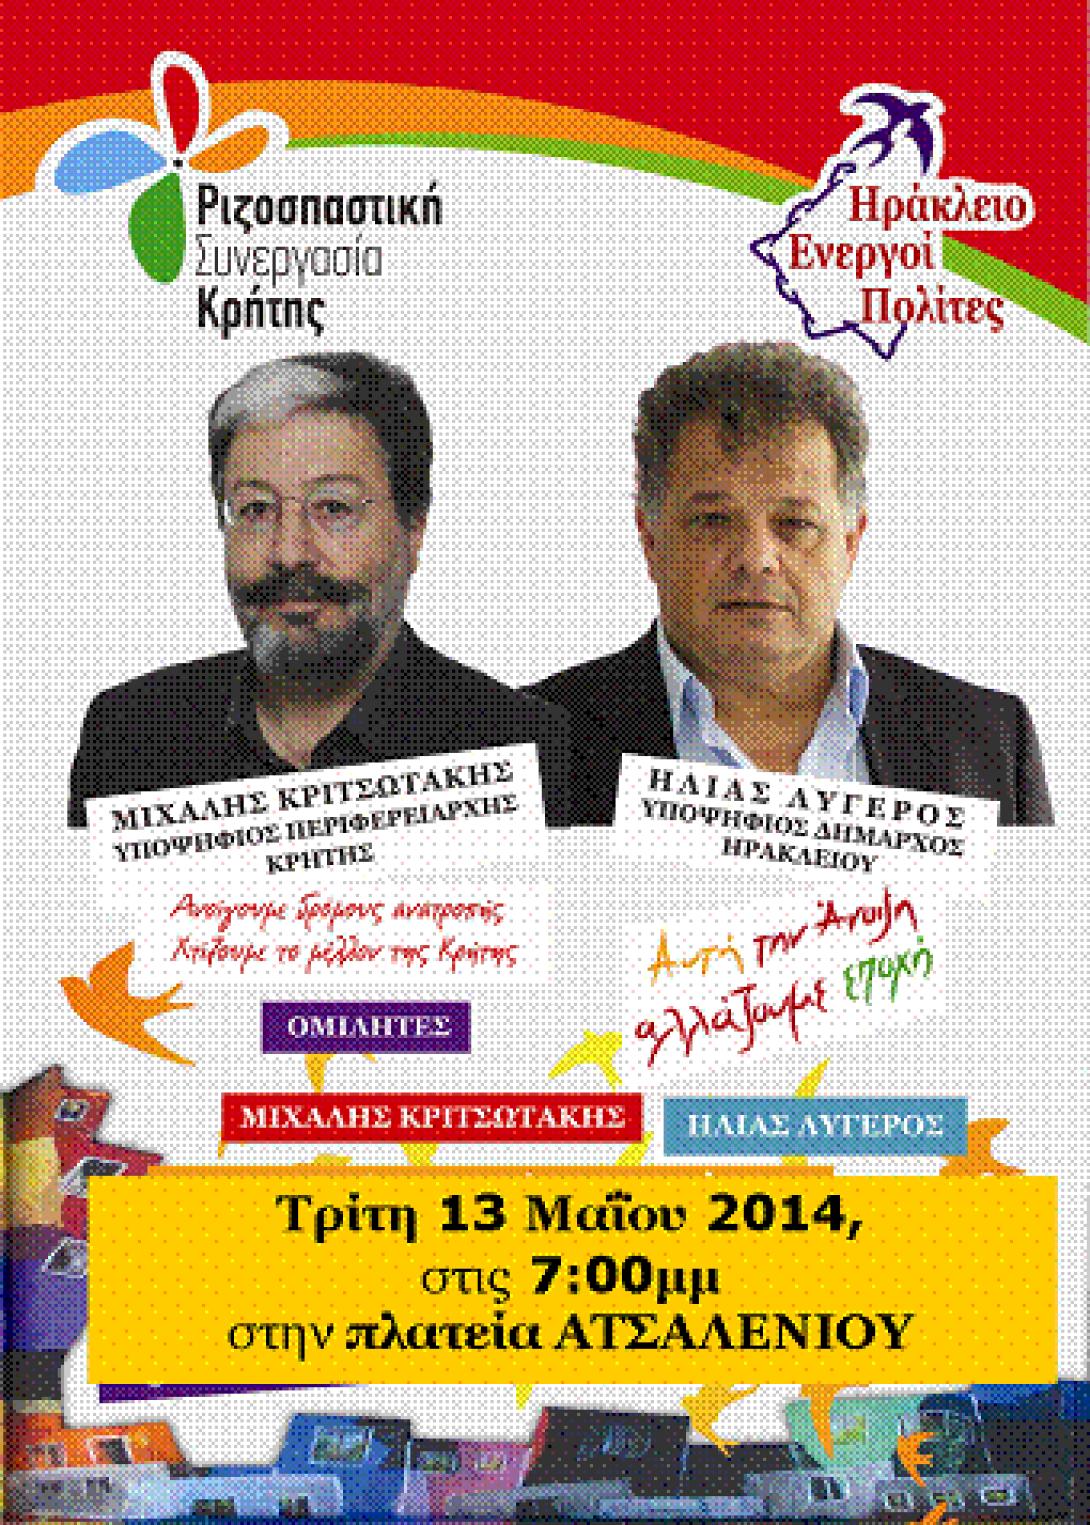 Κοινή εκδήλωση-συζήτηση την Τρίτη των παρατάξεων «Ριζοσπαστική Συνεργασία Κρήτης» και «Ηράκλειο Ενεργοί Πολίτες»